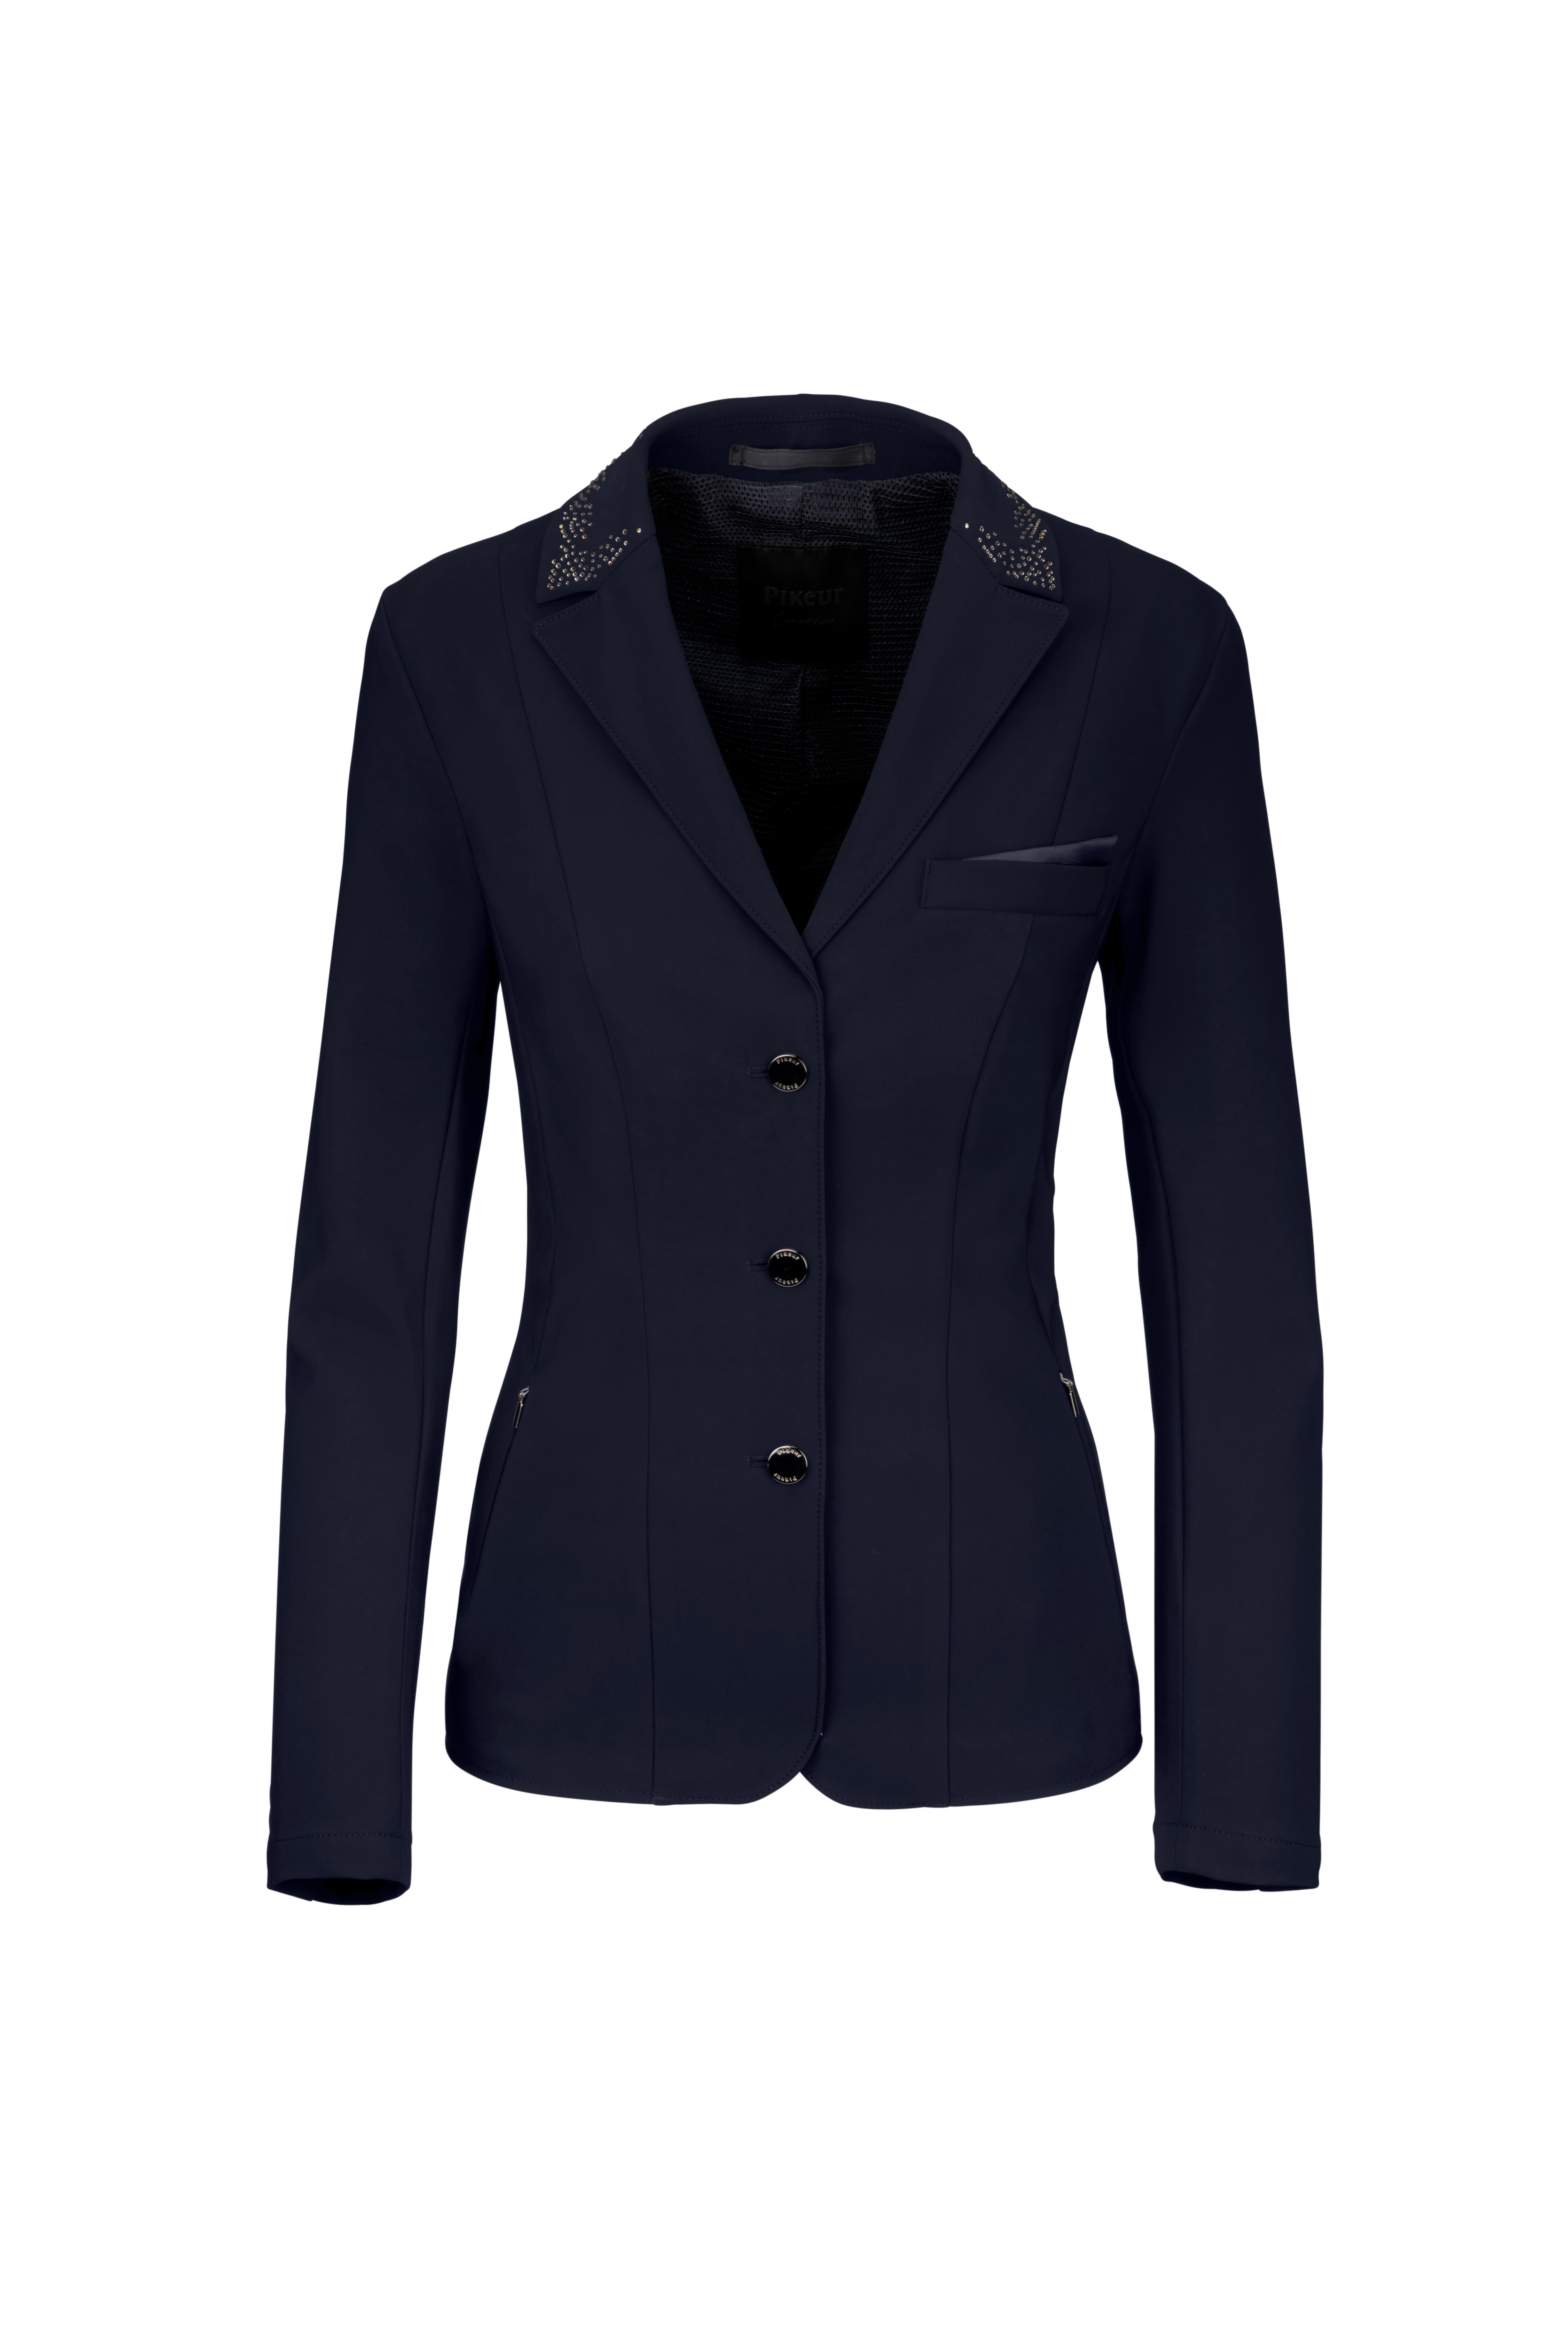 Pikeur FS24 Damen Competition Jacket 2100 Selection